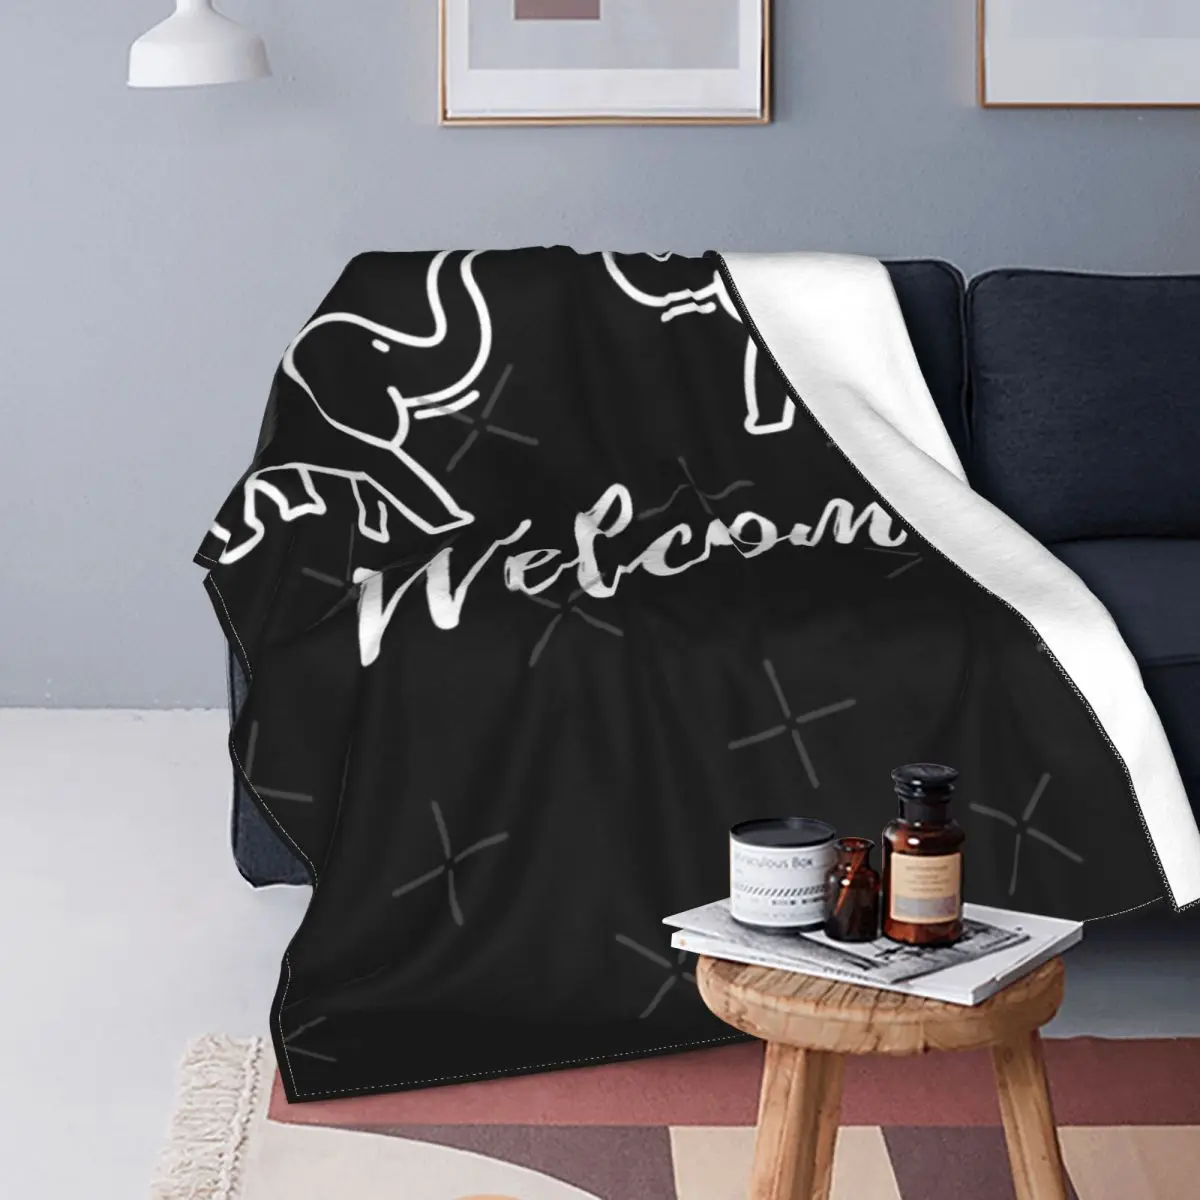 

Слон Добро пожаловать дизайн 2 одеяло покрывало для кровати плед одеяло аниме одеяло Толстовка одеяло пляжное полотенце роскошное